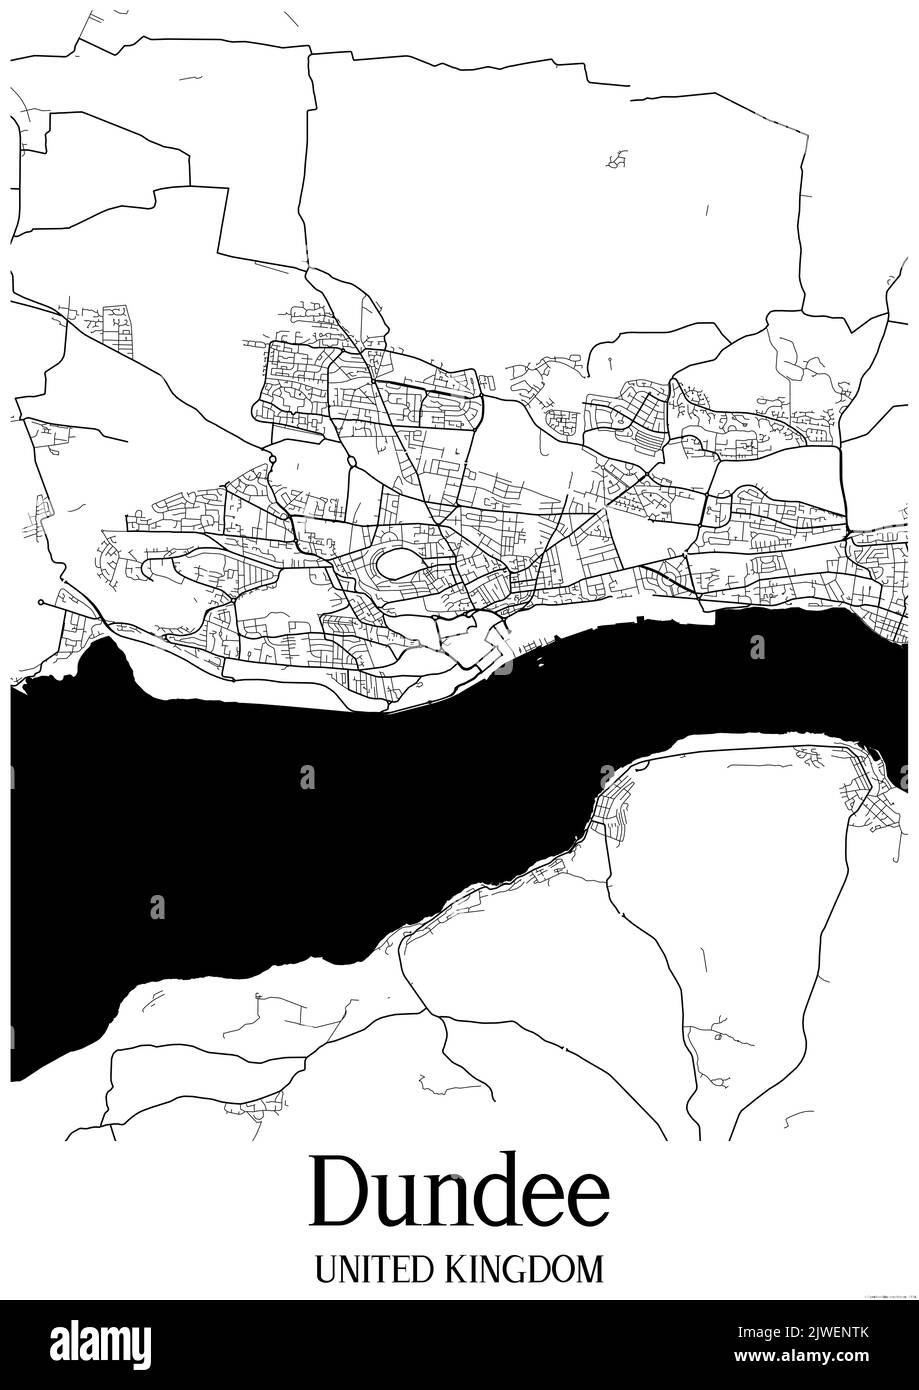 Klassische Schwarz-Weiß-Stadtkarte von Dundee Vereinigtes Königreich.Diese Karte enthält geografische Linien für Haupt- und Nebenstraßen. Stockfoto